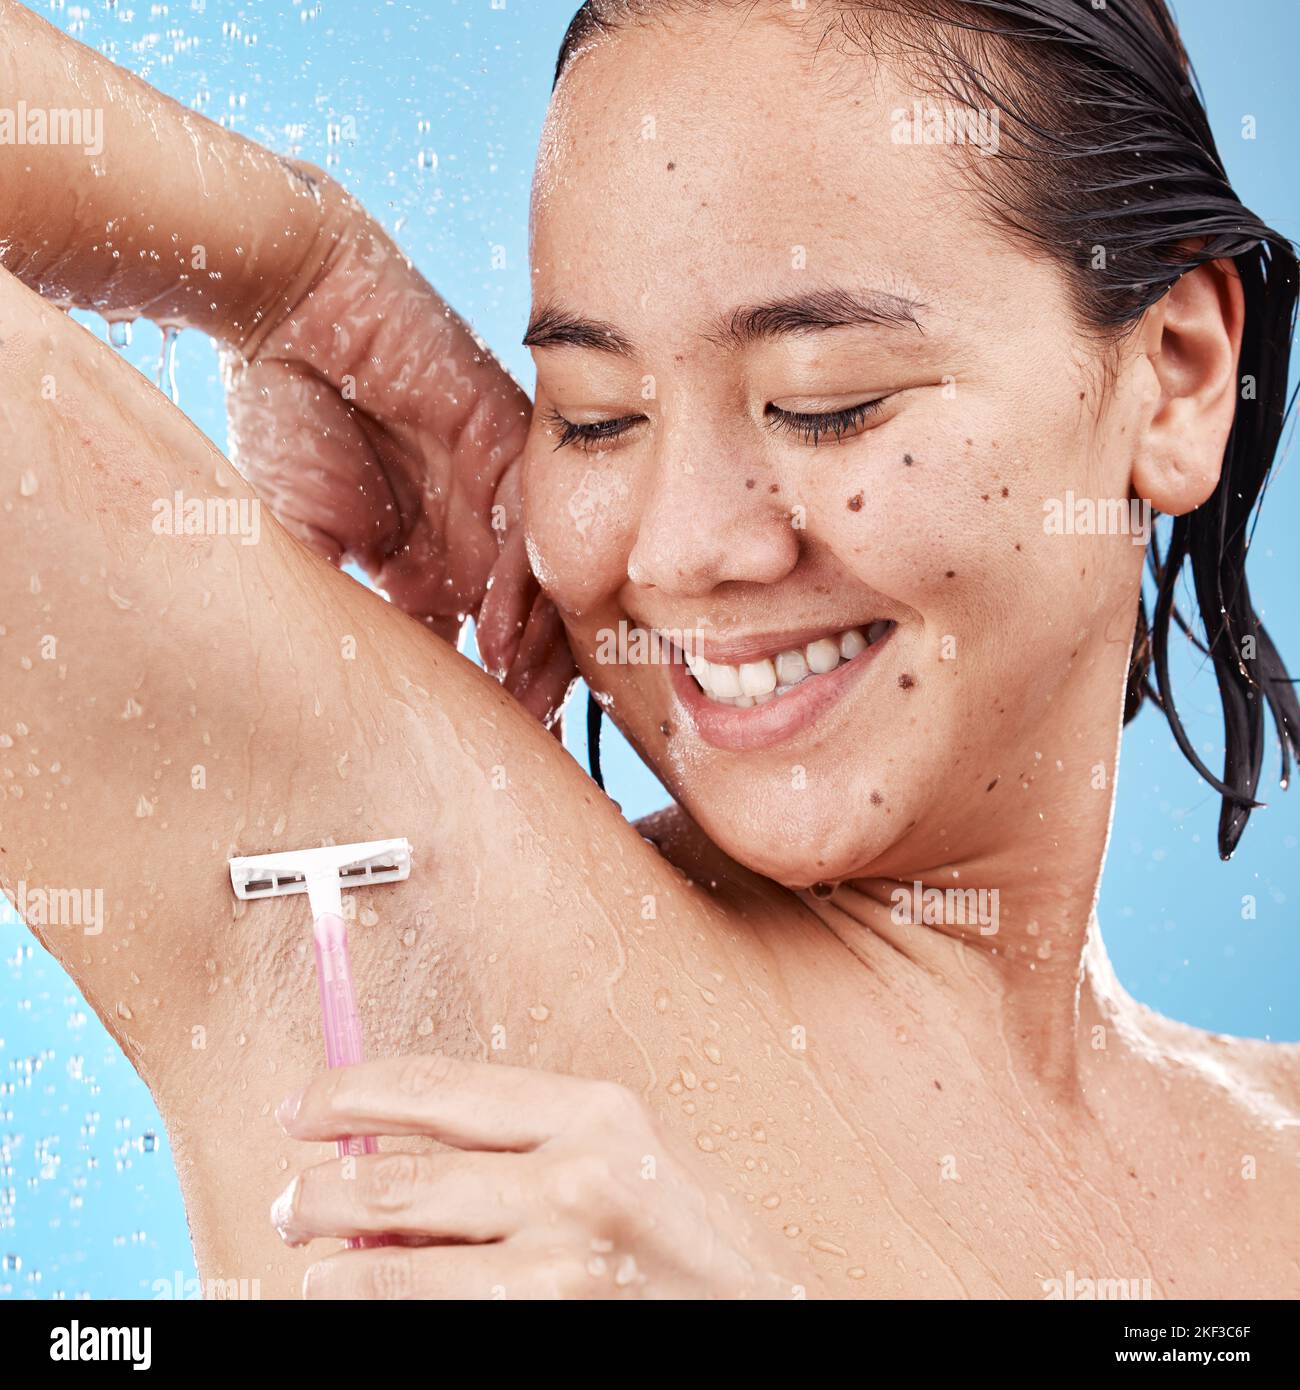 Dusche, Frau rasieren Achselhöhlen mit Rasiermesser und saubere Schönheit mit Wasser und Hygiene für die Pflege vor blauem Studio-Hintergrund. Glückliches asiatisches Modell, gesund Stockfoto